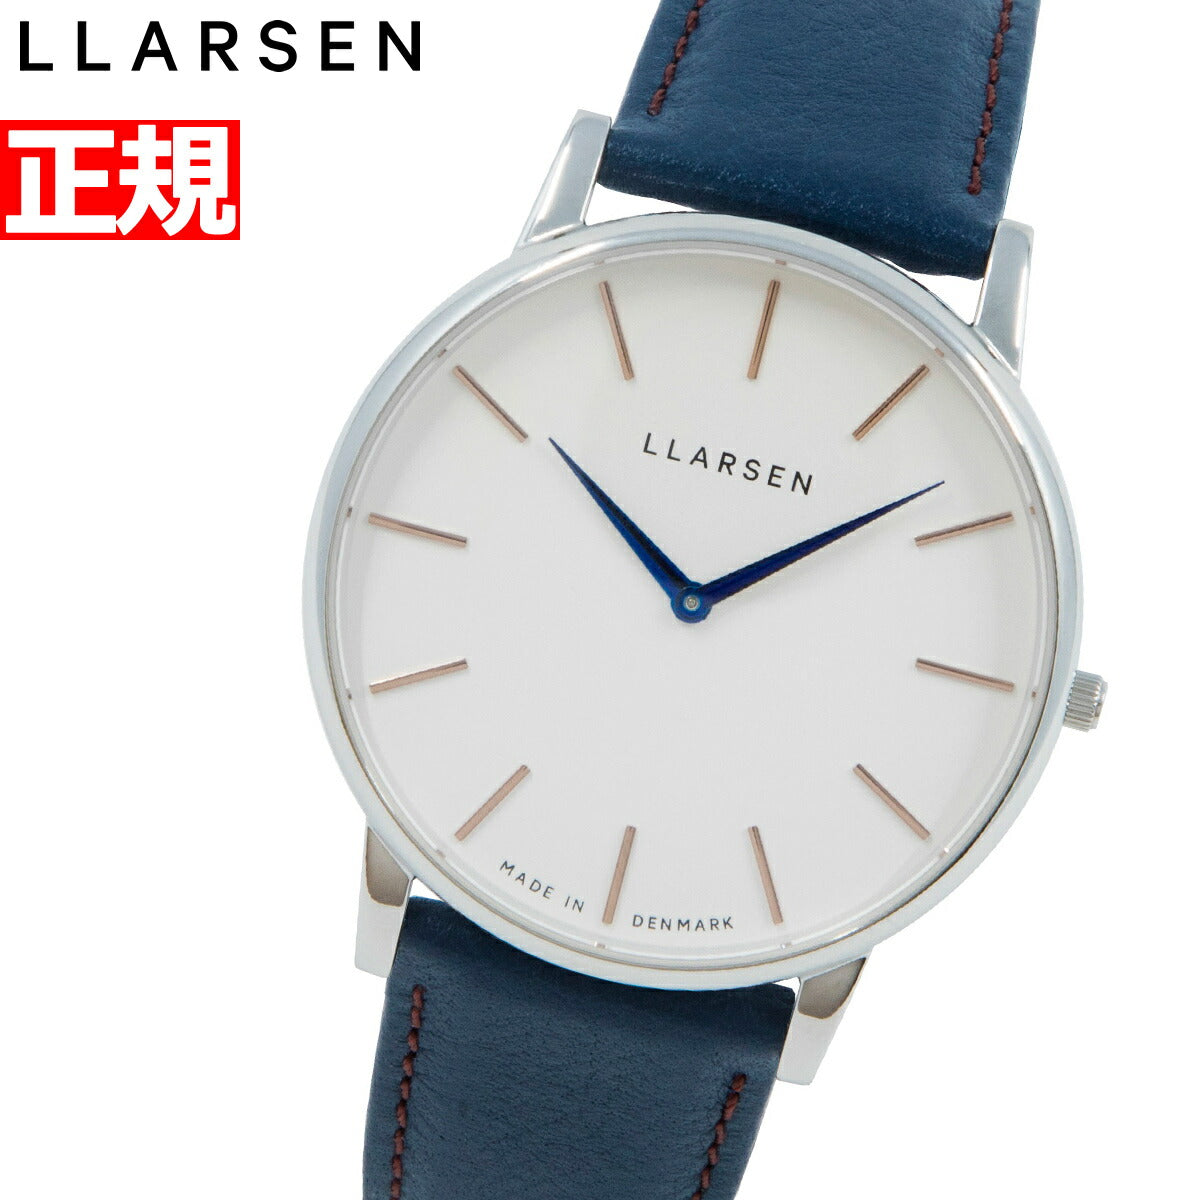 エルラーセン LLARSEN 腕時計 メンズ エコレザー ECCO LEATHER 限定モデル オリバー Oliver LL147SWDECOCBC